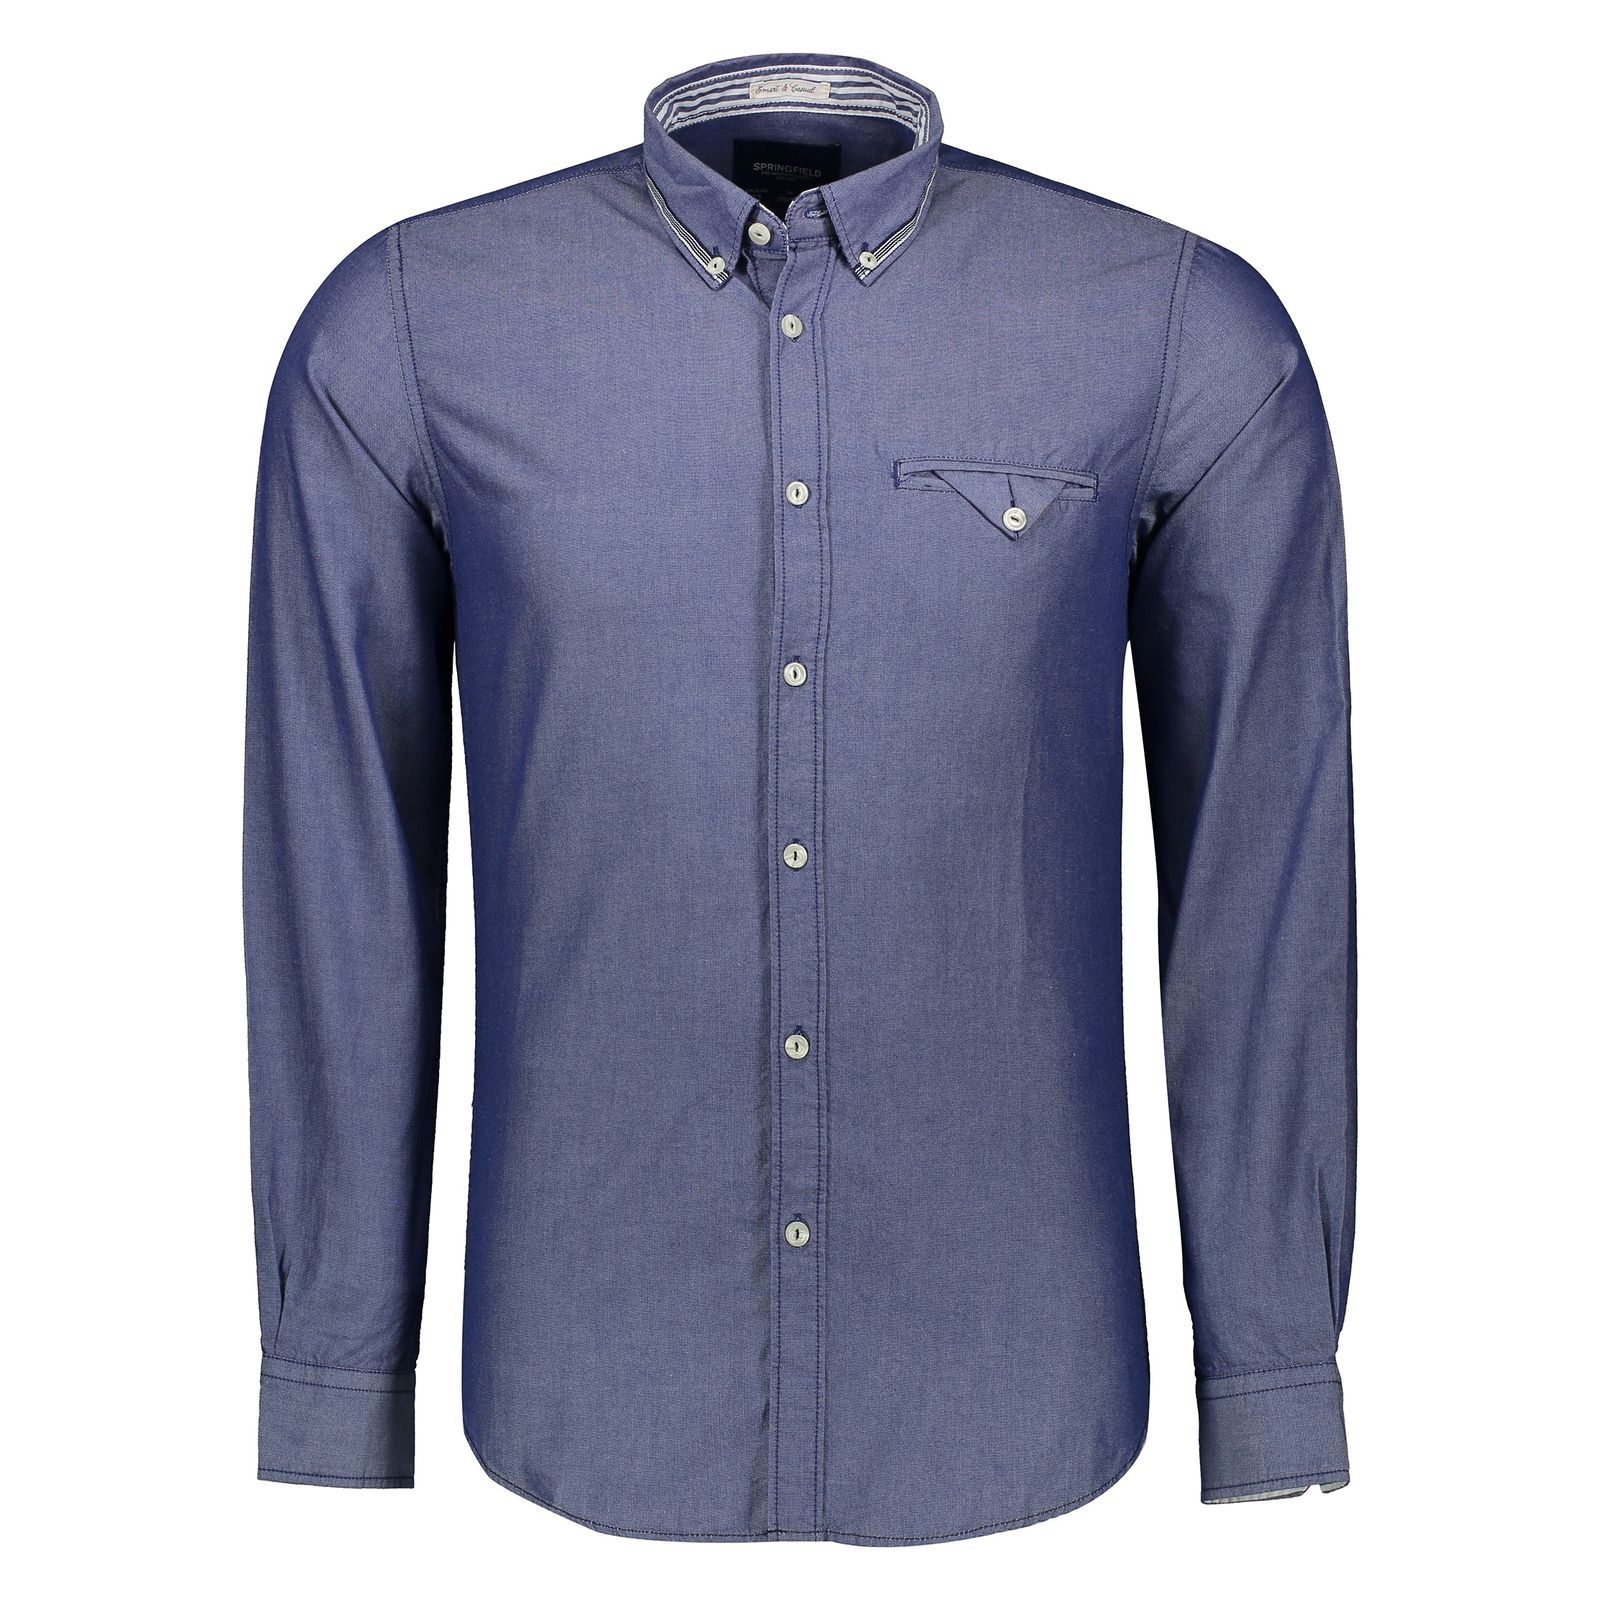 پیراهن مردانه اسپرینگ فیلد مدل 0275549-12 - آبی - 1